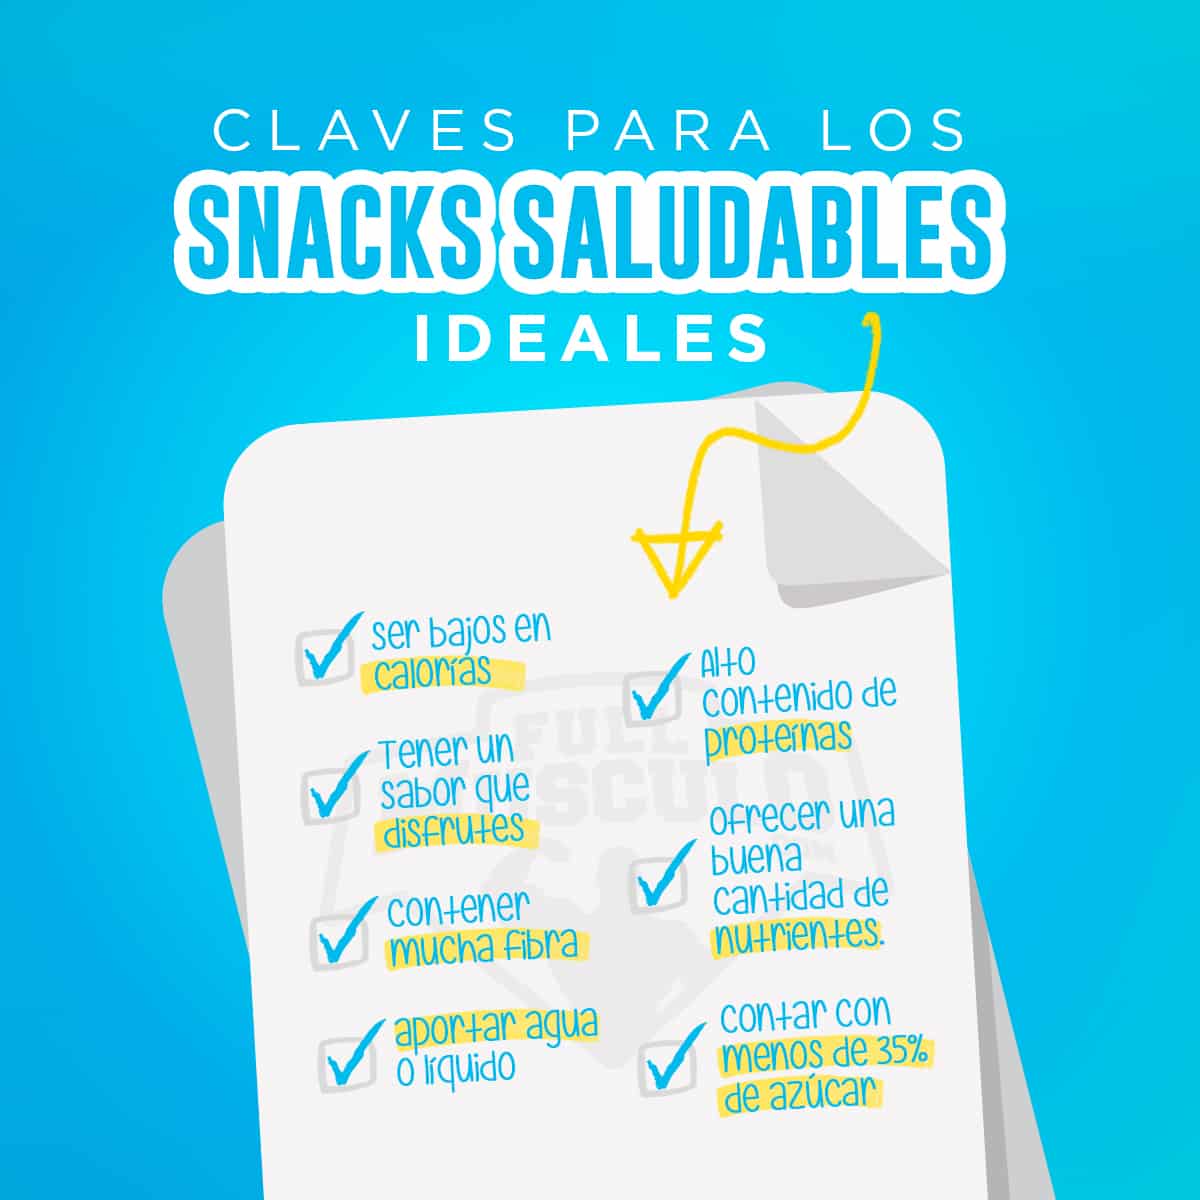 Claves para unos snacks saludables